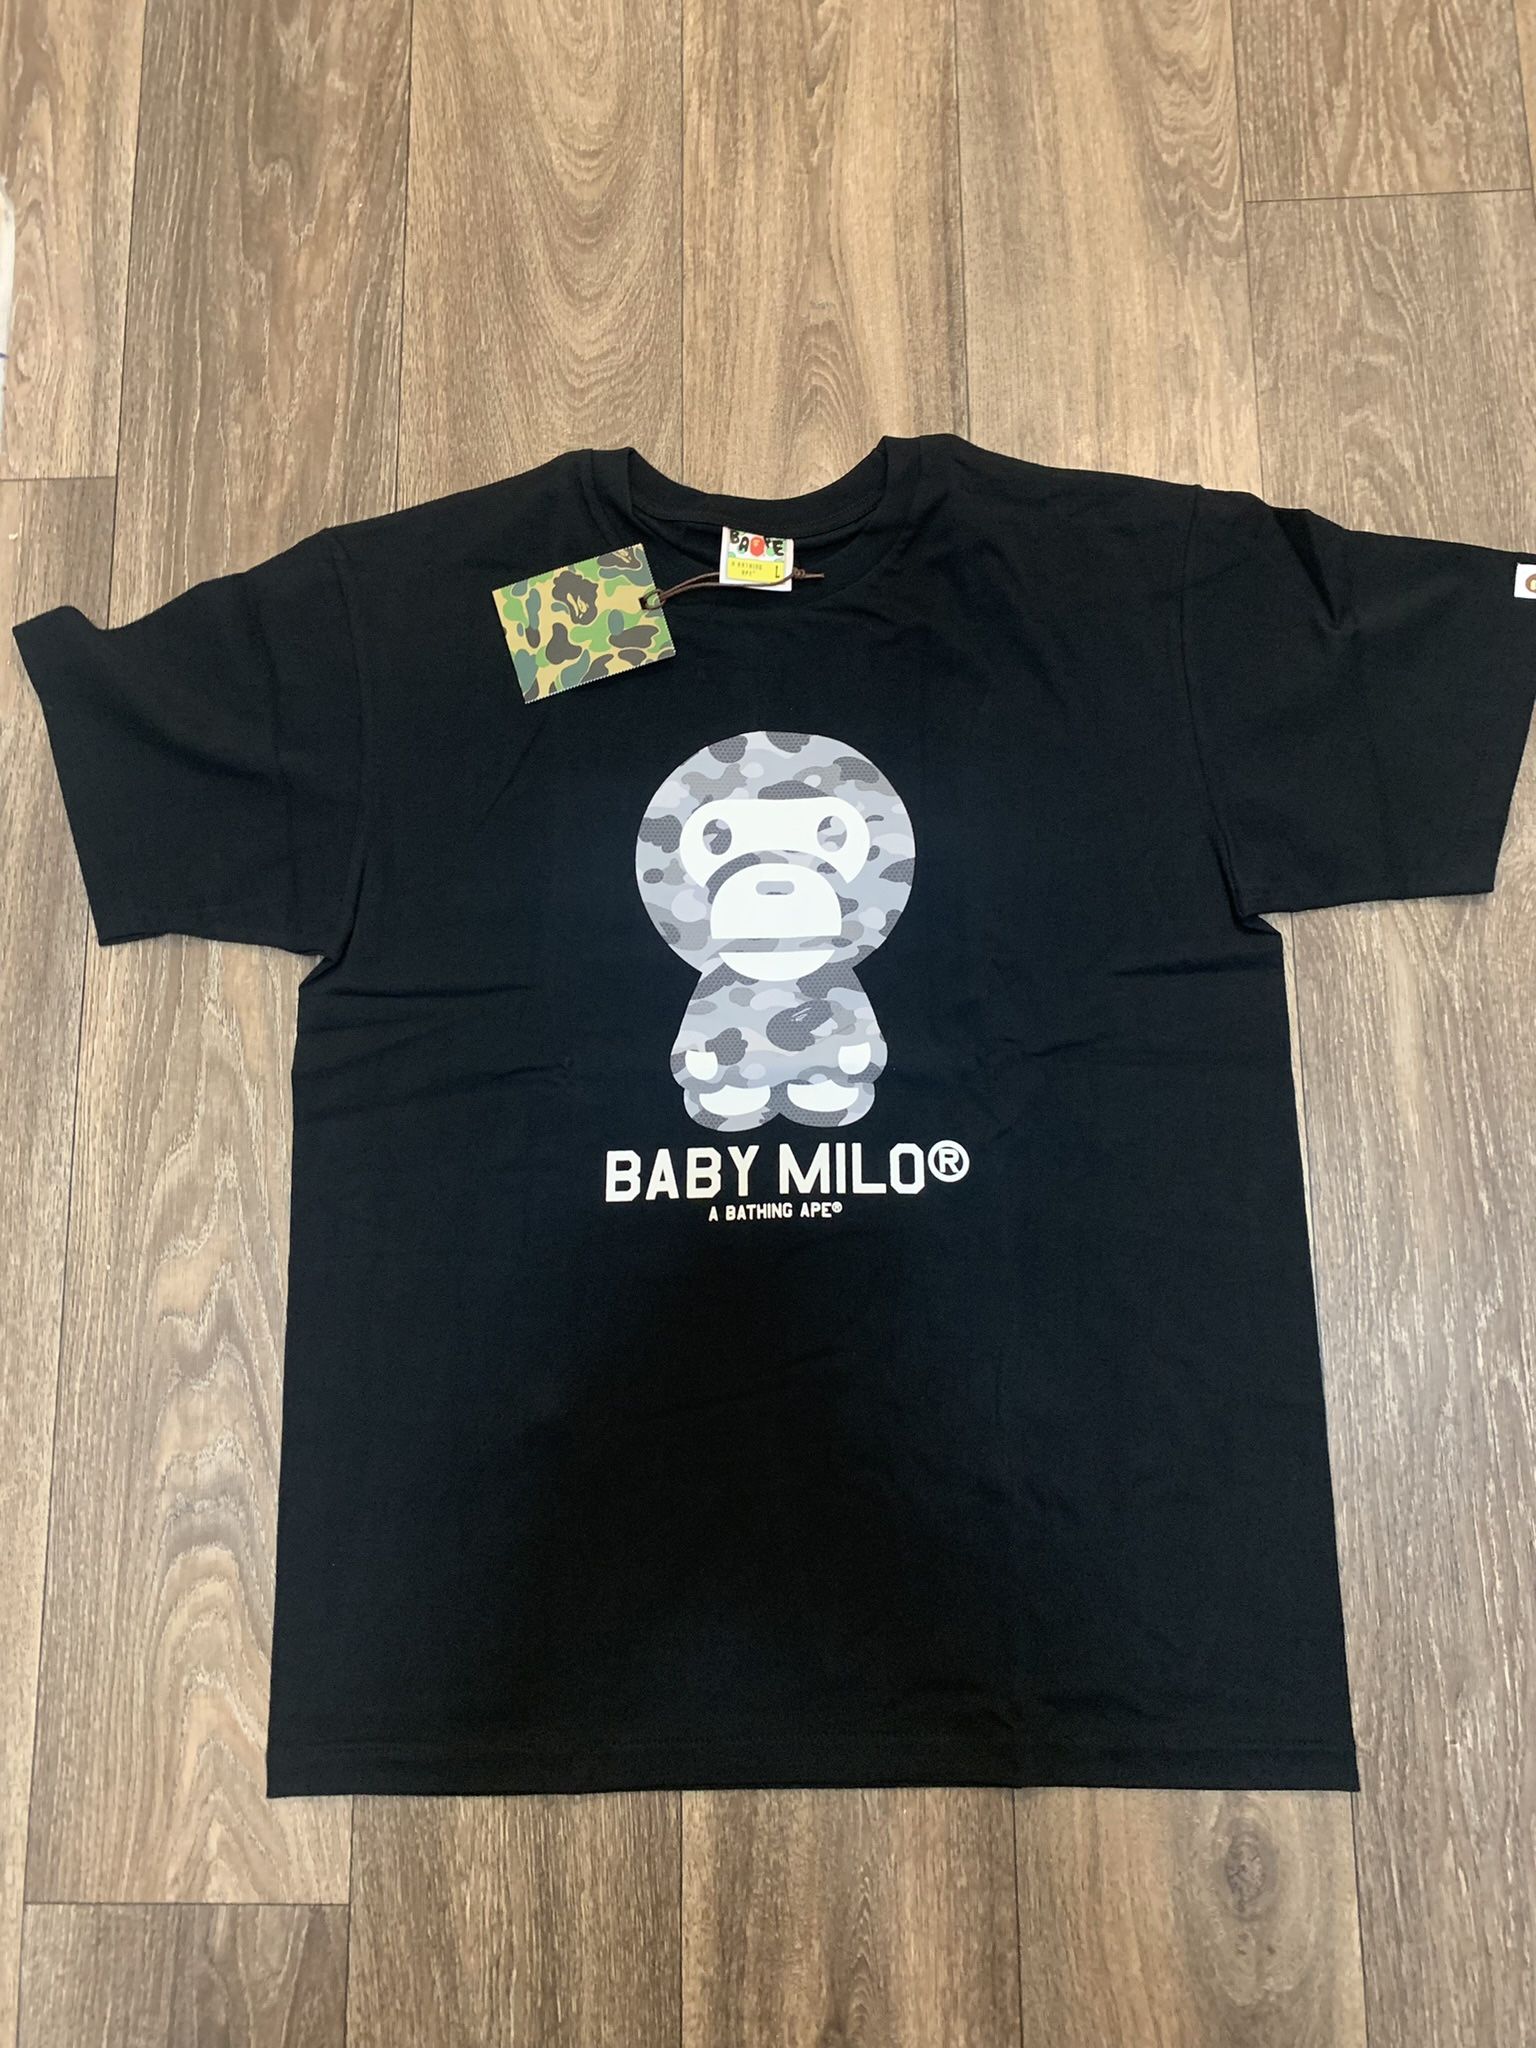 Bape Grey Baby Milo T-Shirt - Size Large